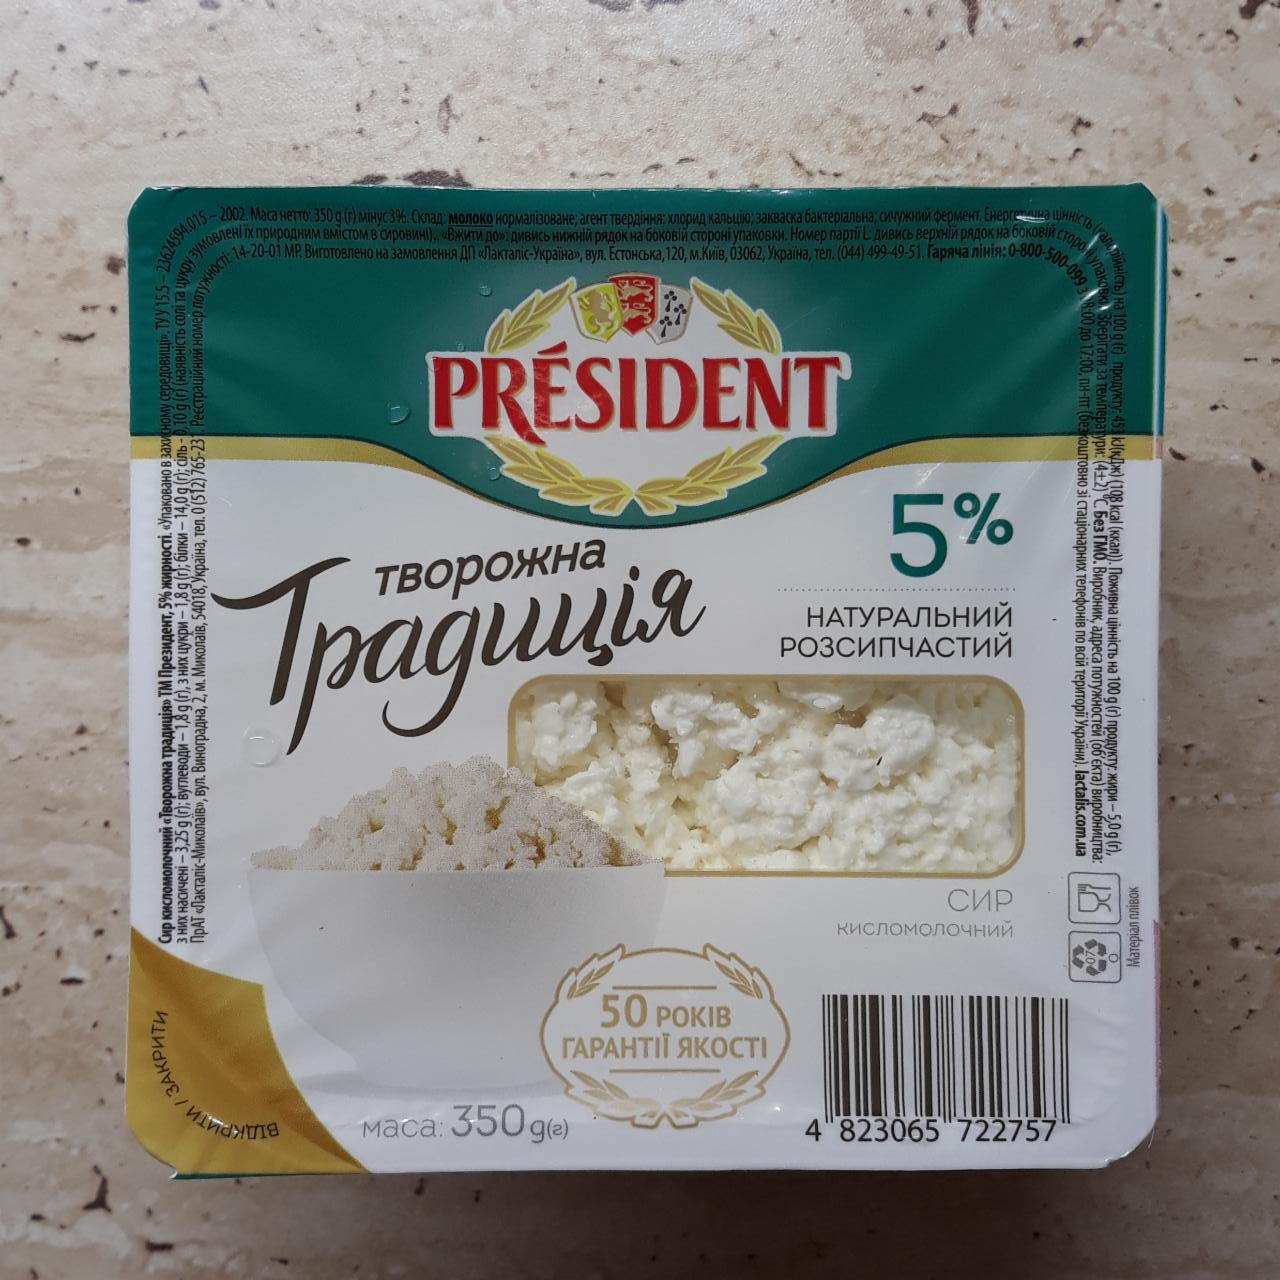 Фото - Сир кисломолочний 5% Творожна традиція President